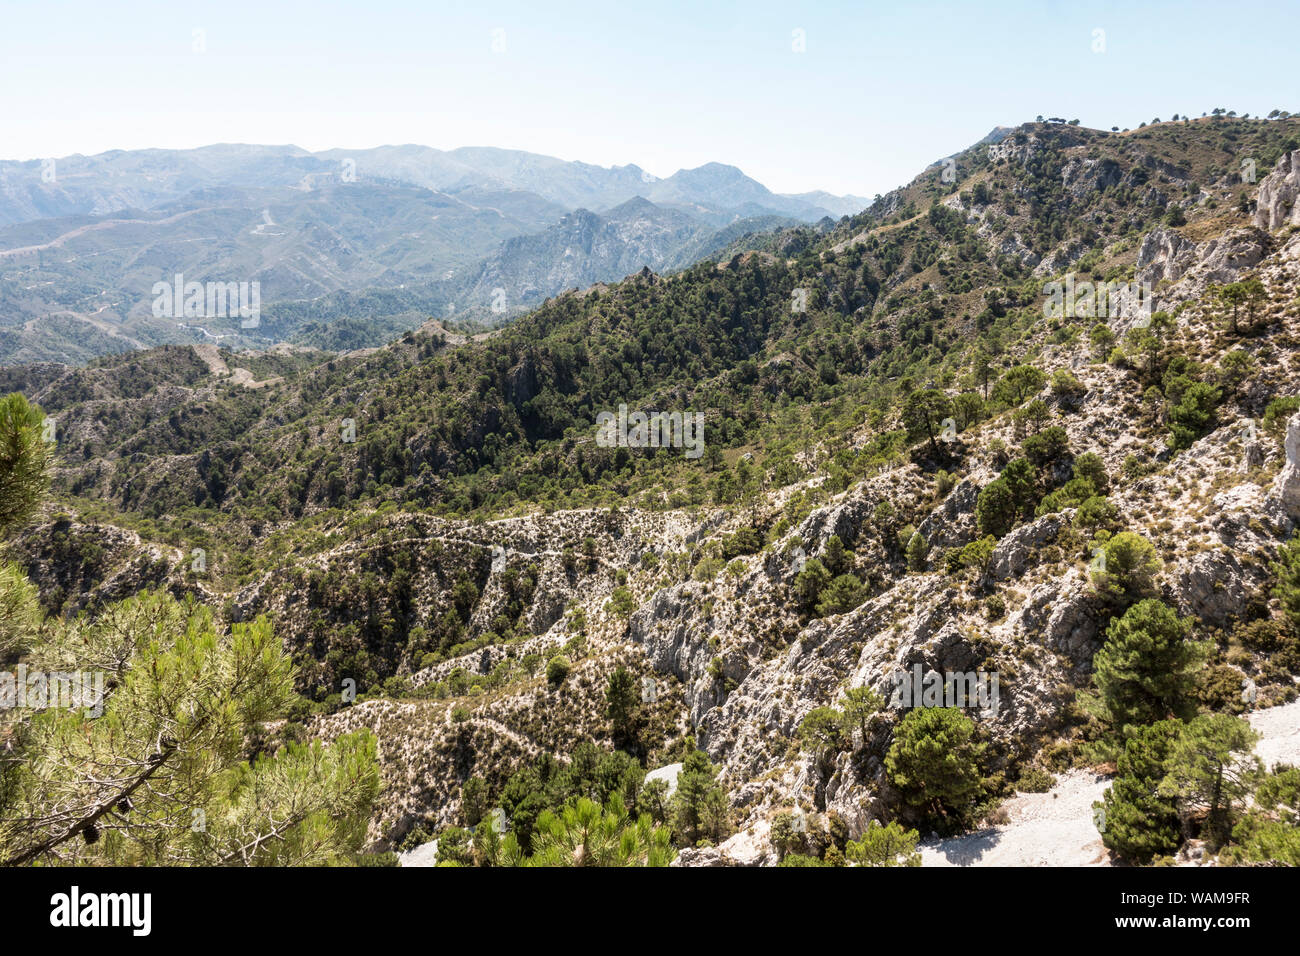 Vista panorámica del Parque Natural Sierras de Tejeda, Almijara y Alhama, en Andalucía, España. Foto de stock